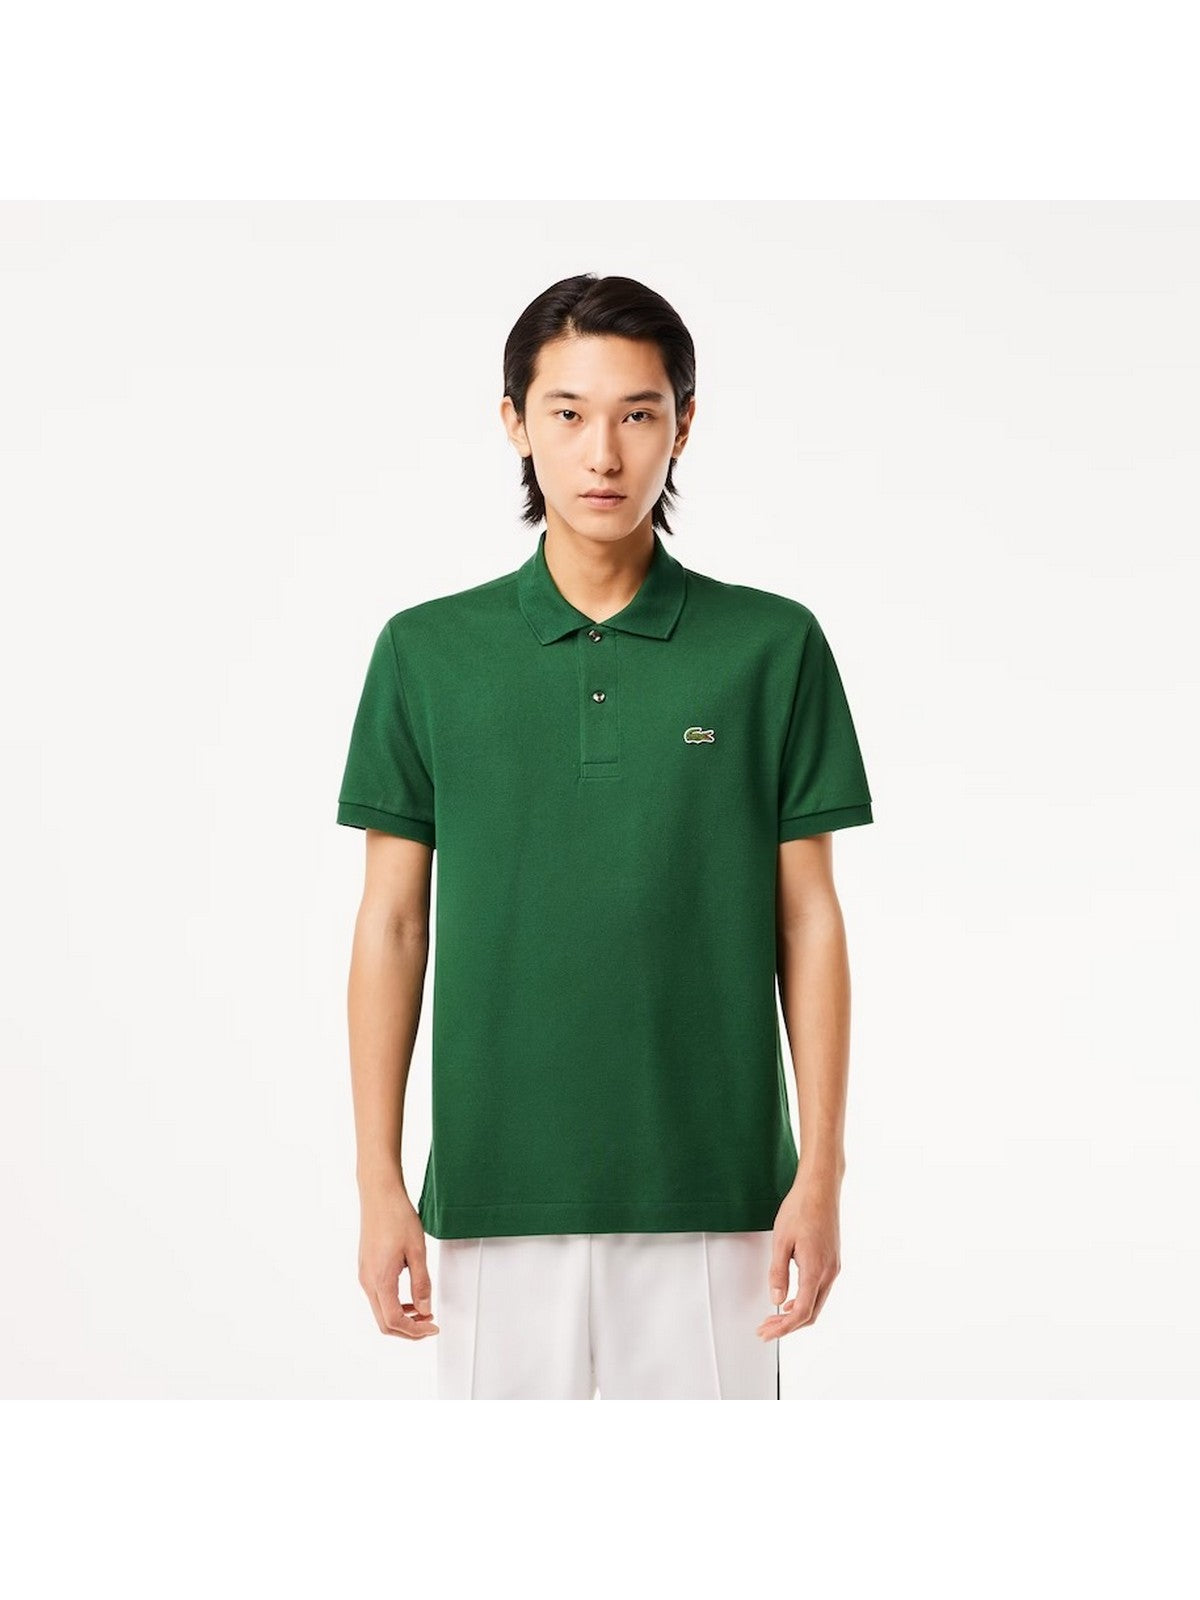 LACOSTE T-Shirt e Polo Uomo  1212 132 Verde